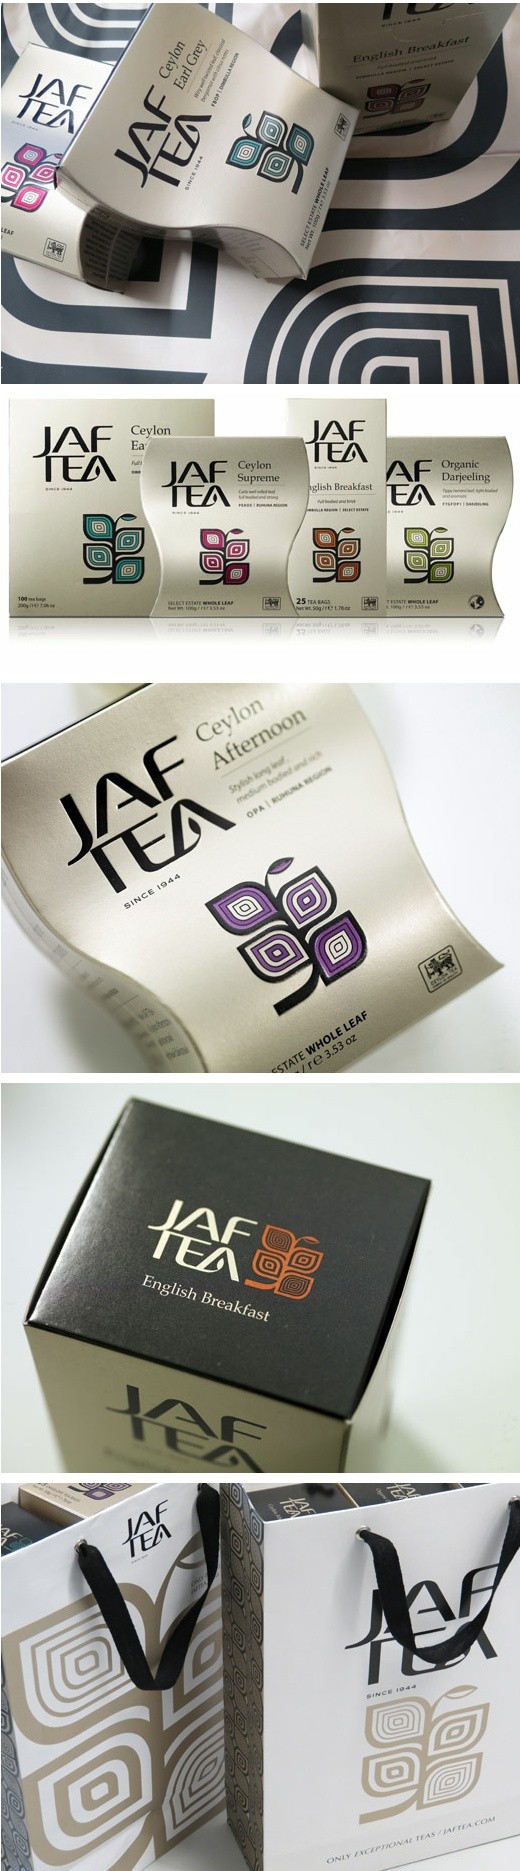 tea labels and packaging | Jaf Tea by Studio h